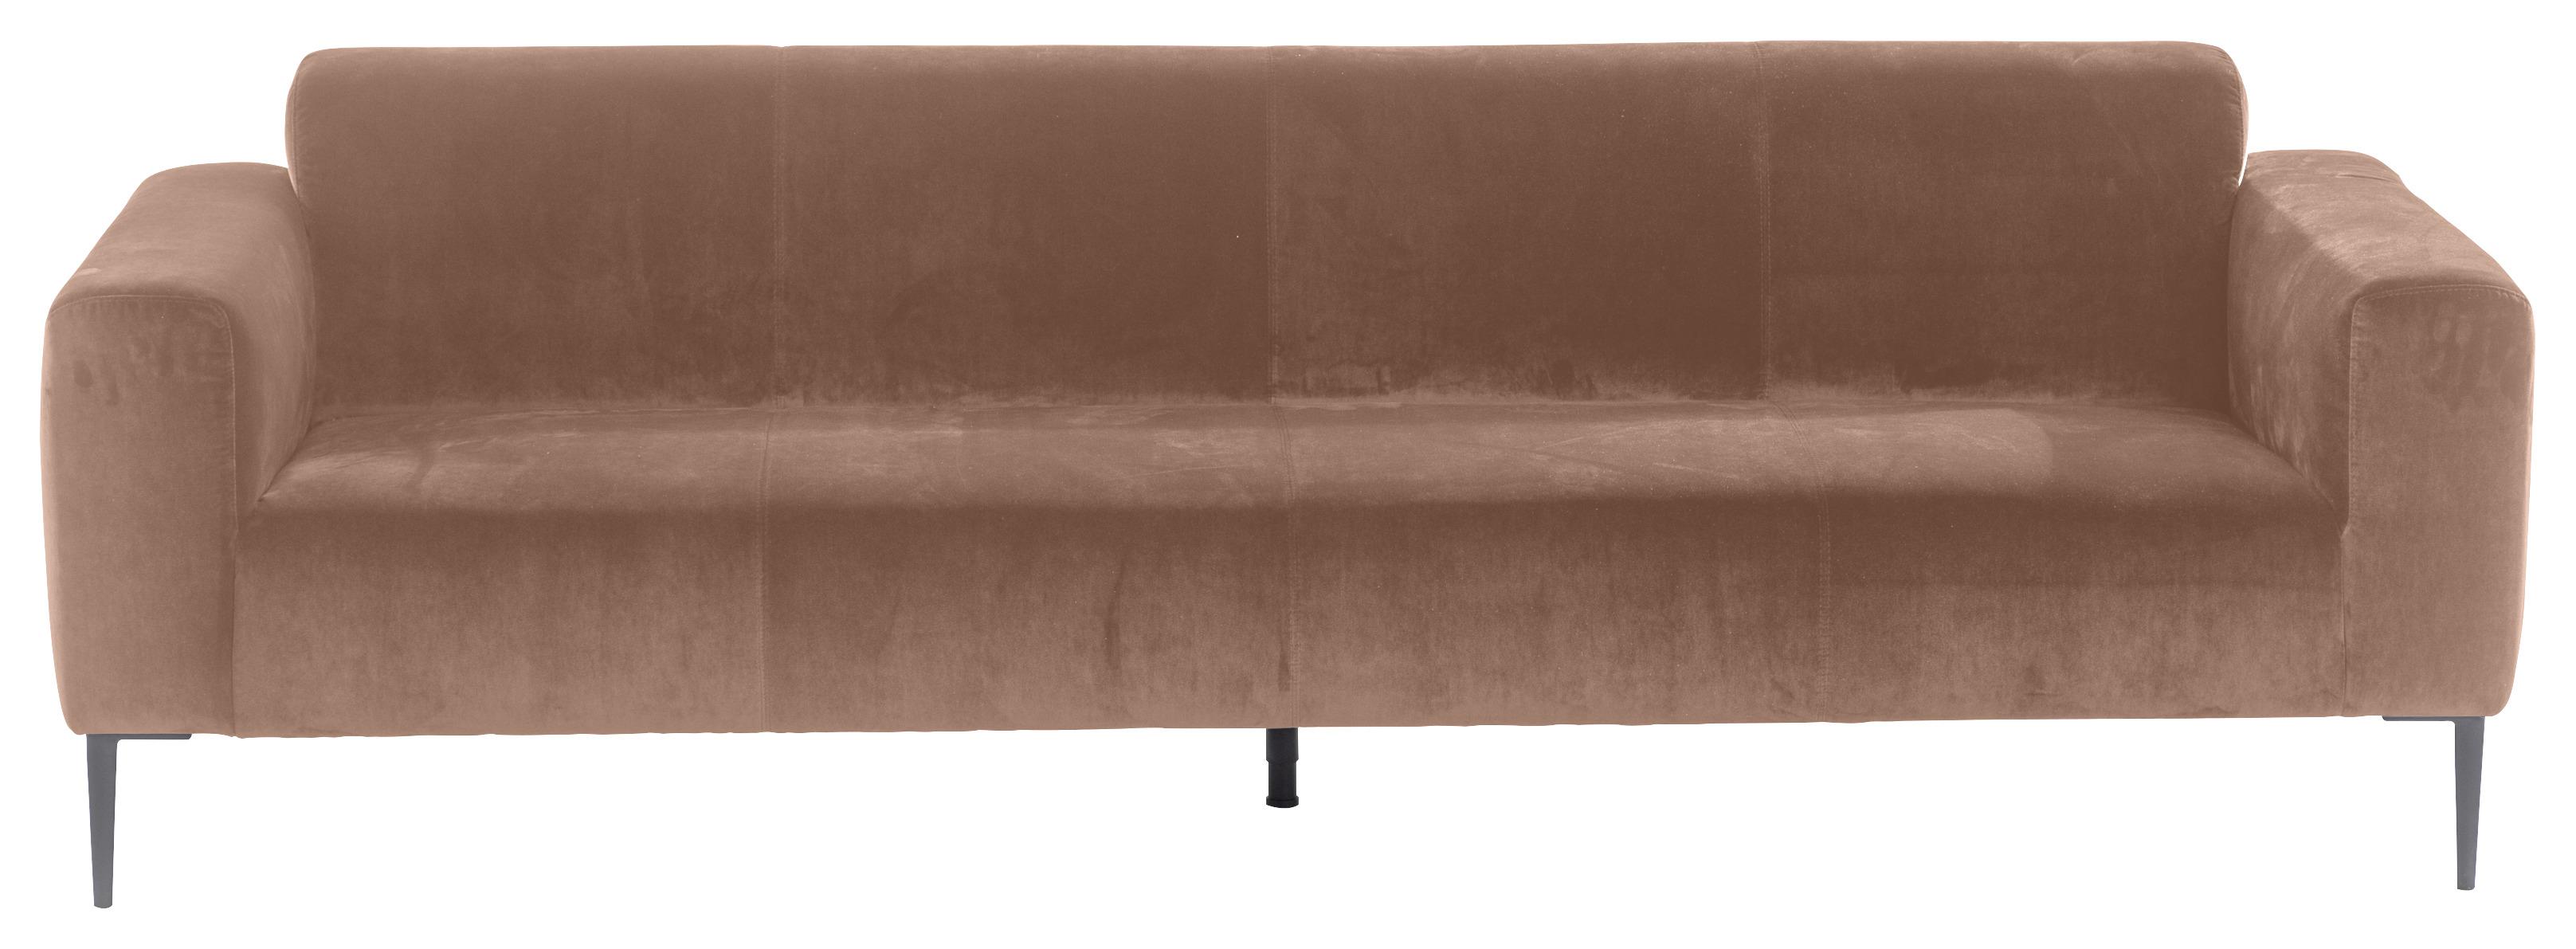 3-Sitzer-Sofa Nobility Rücken Echt Kupferfarben